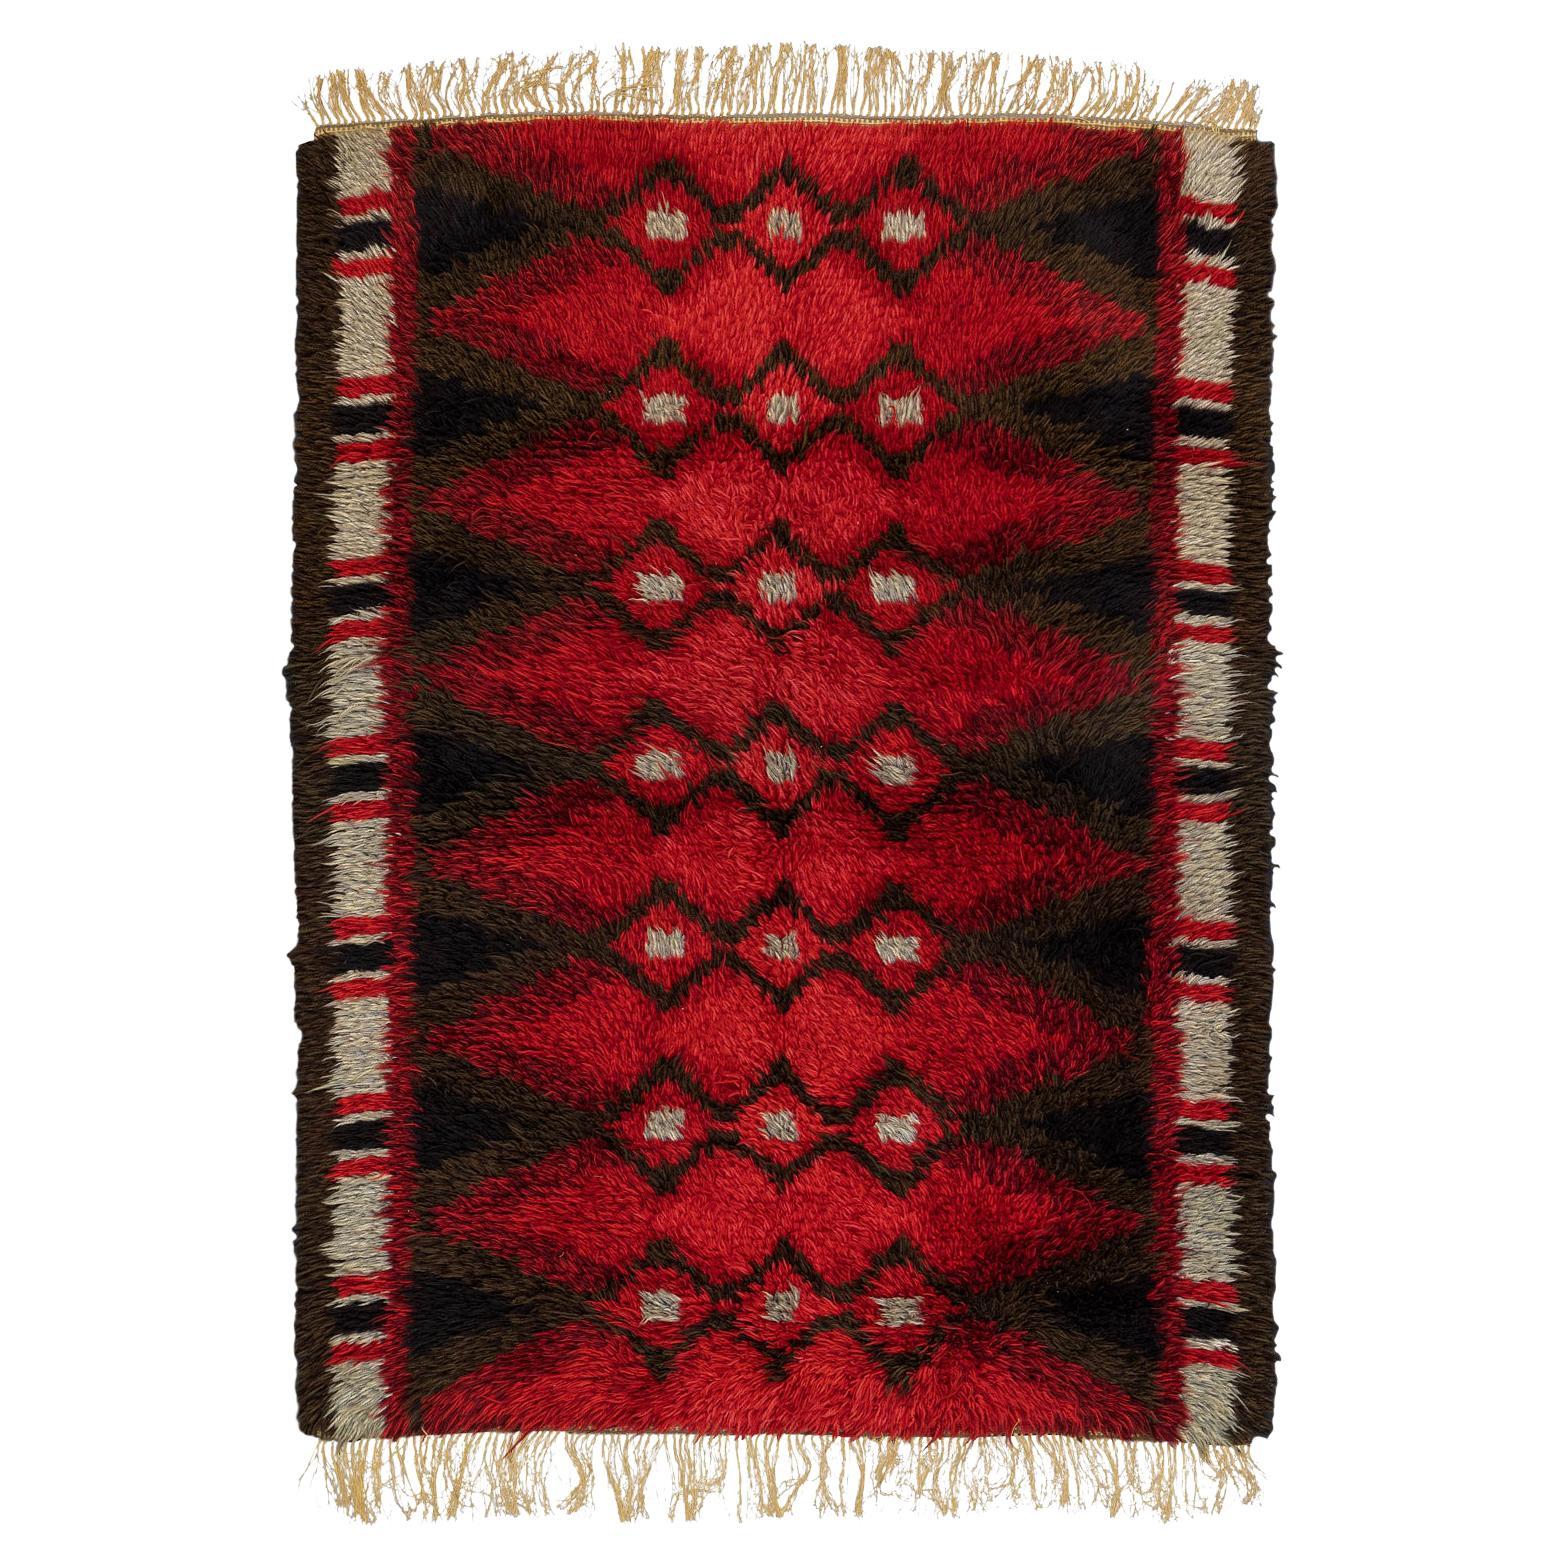  Vintage Rya Red Field Swedish Wool Rug, 1950-1970